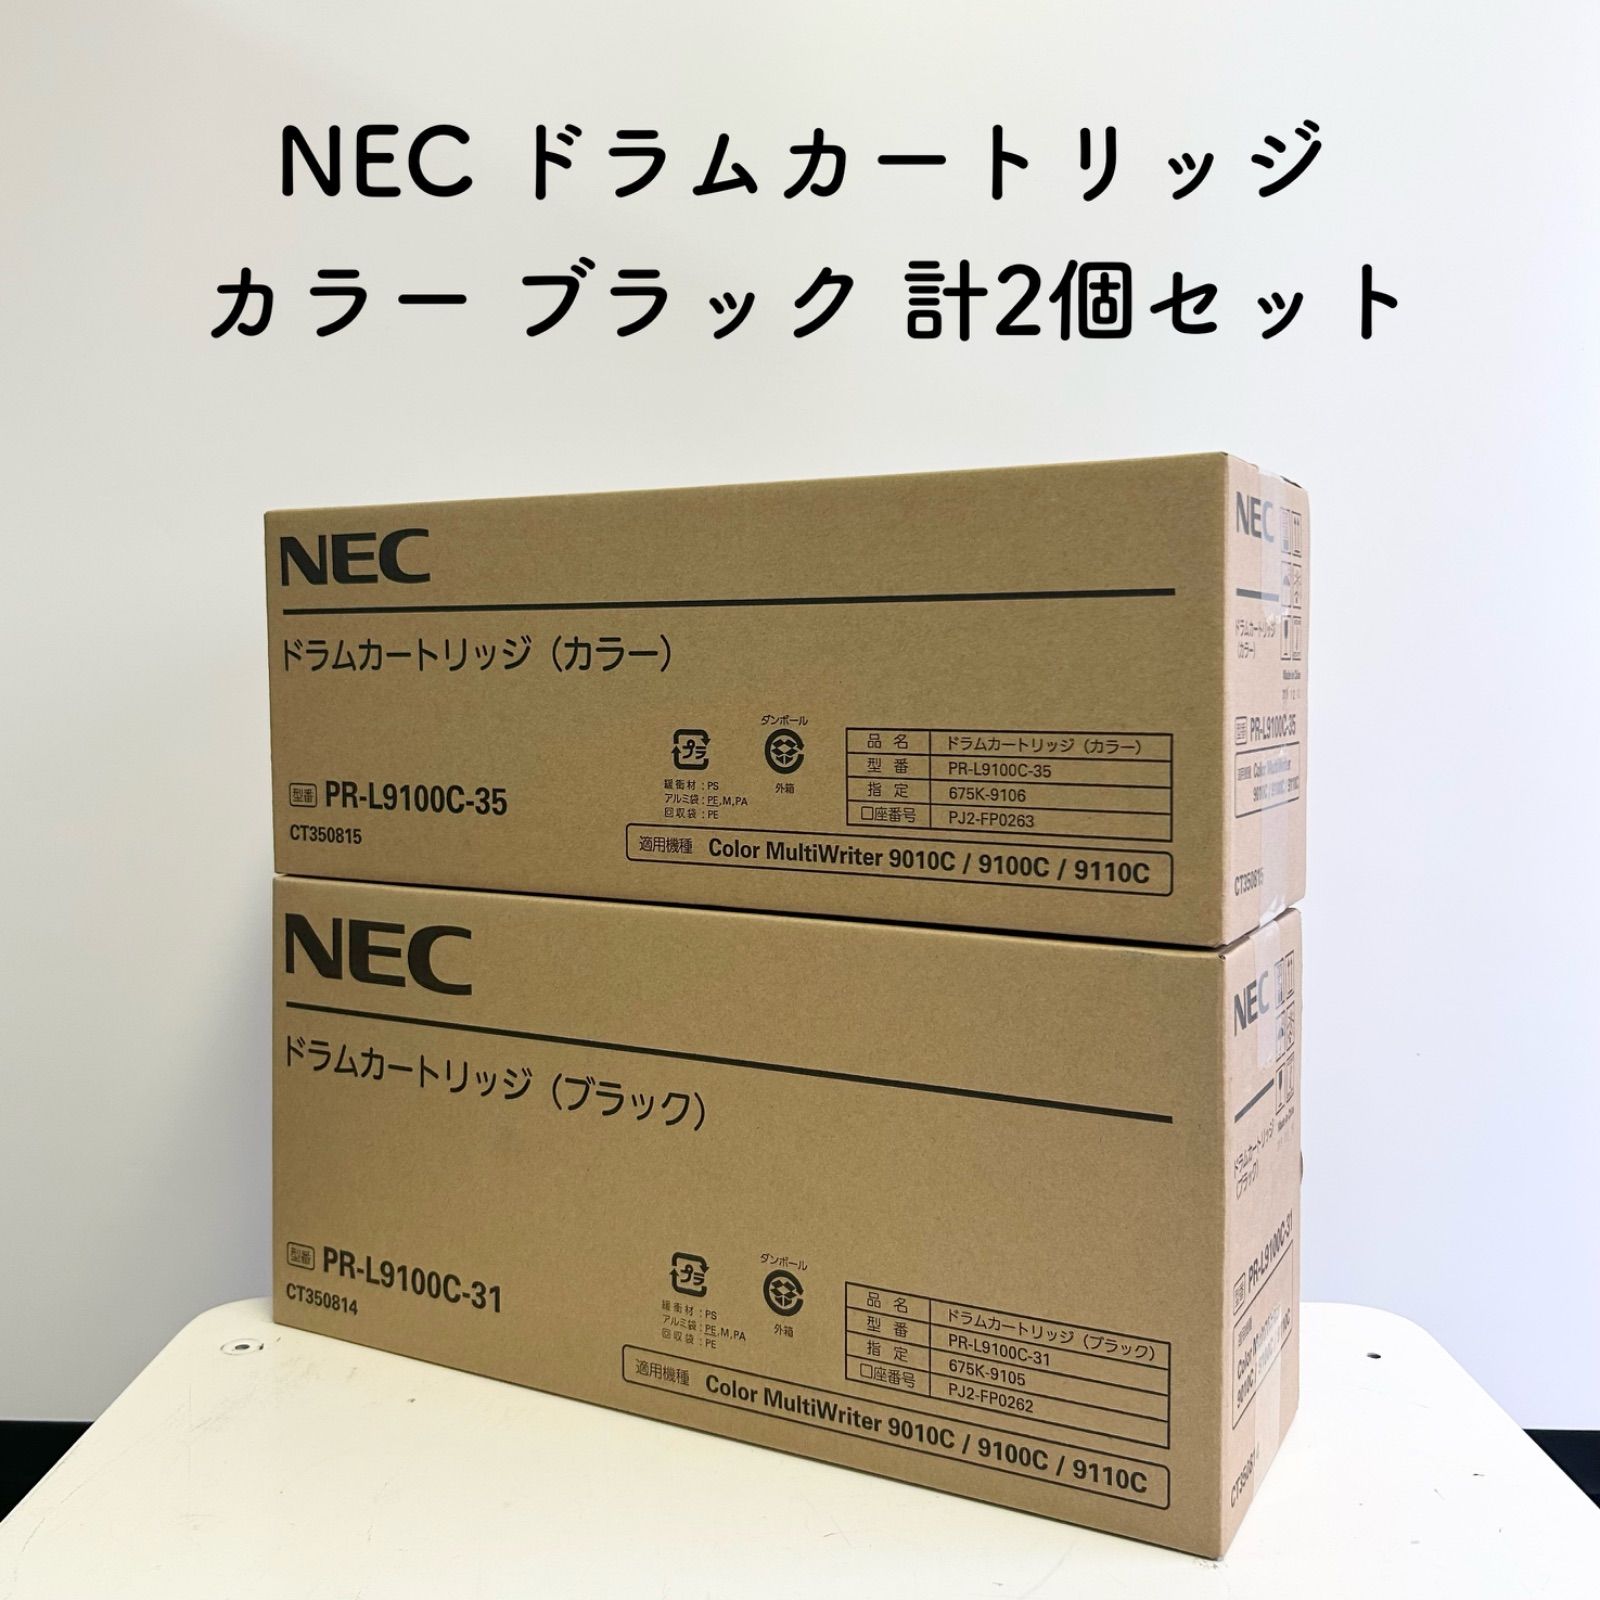 【未使用・期限切れ】NEC ドラムカートリッジ ブラック カラー PR-L9100C-35 PR-L9100C-31 計2個セット